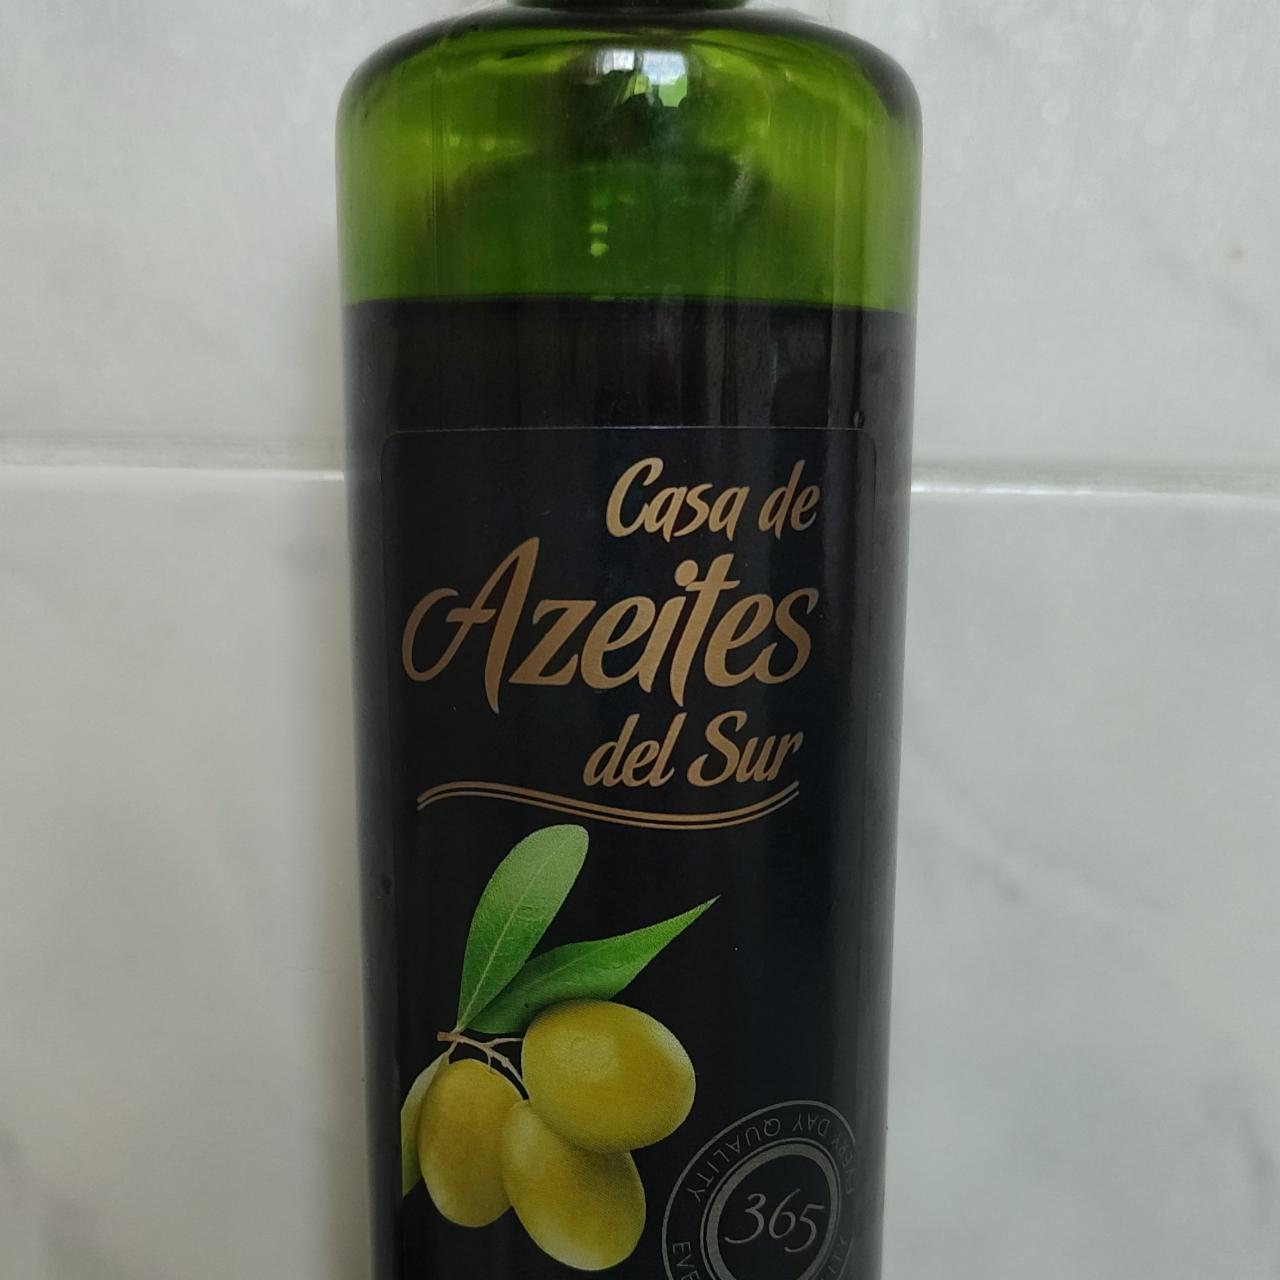 Фото - Масло оливковое Casa de Azeites